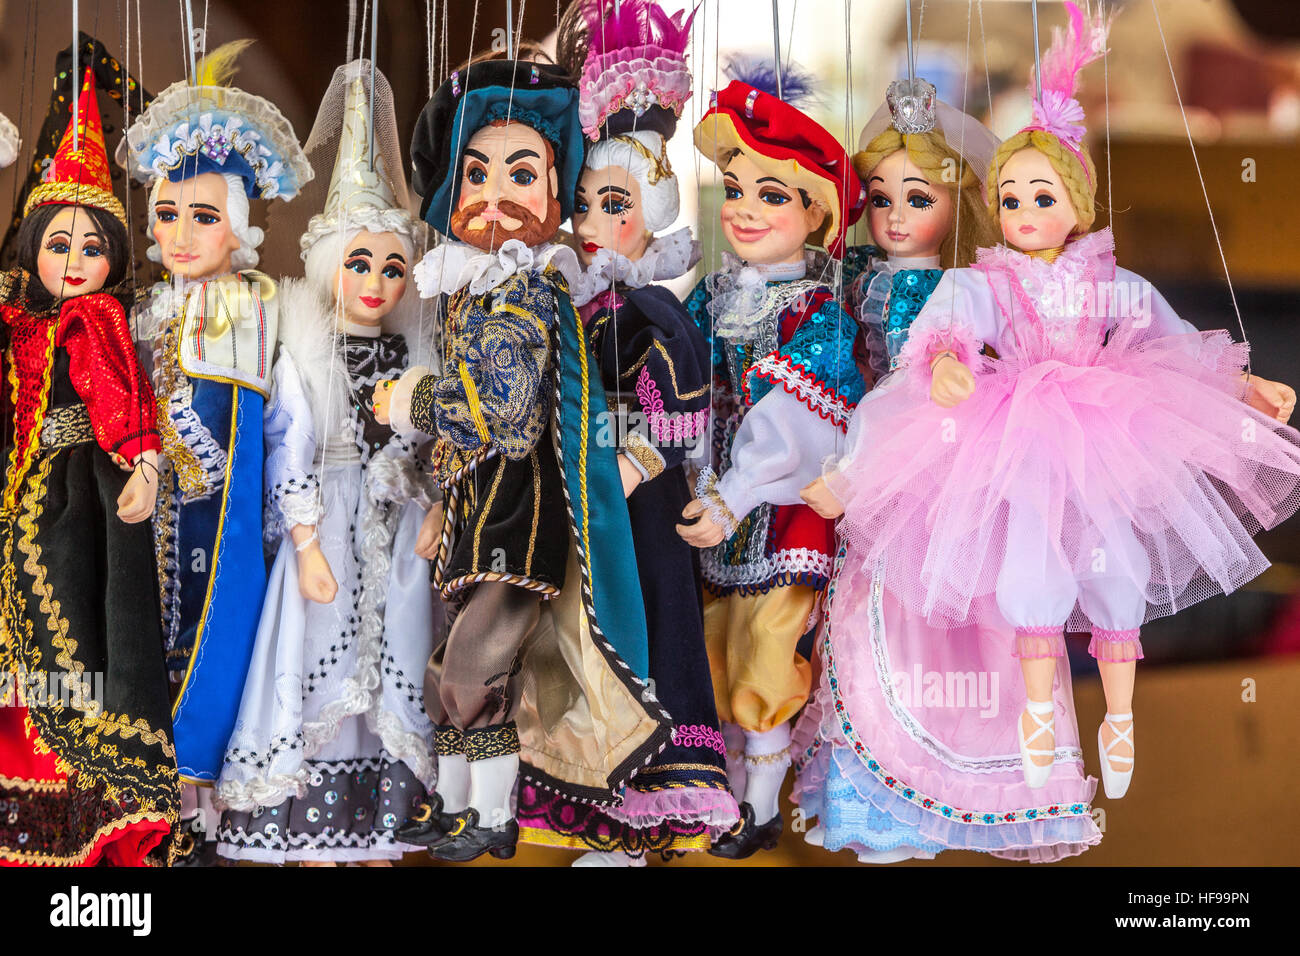 Prague puppets for sale, souvenirs, Czech marionettes, Prague, Czech Republic Stock Photo